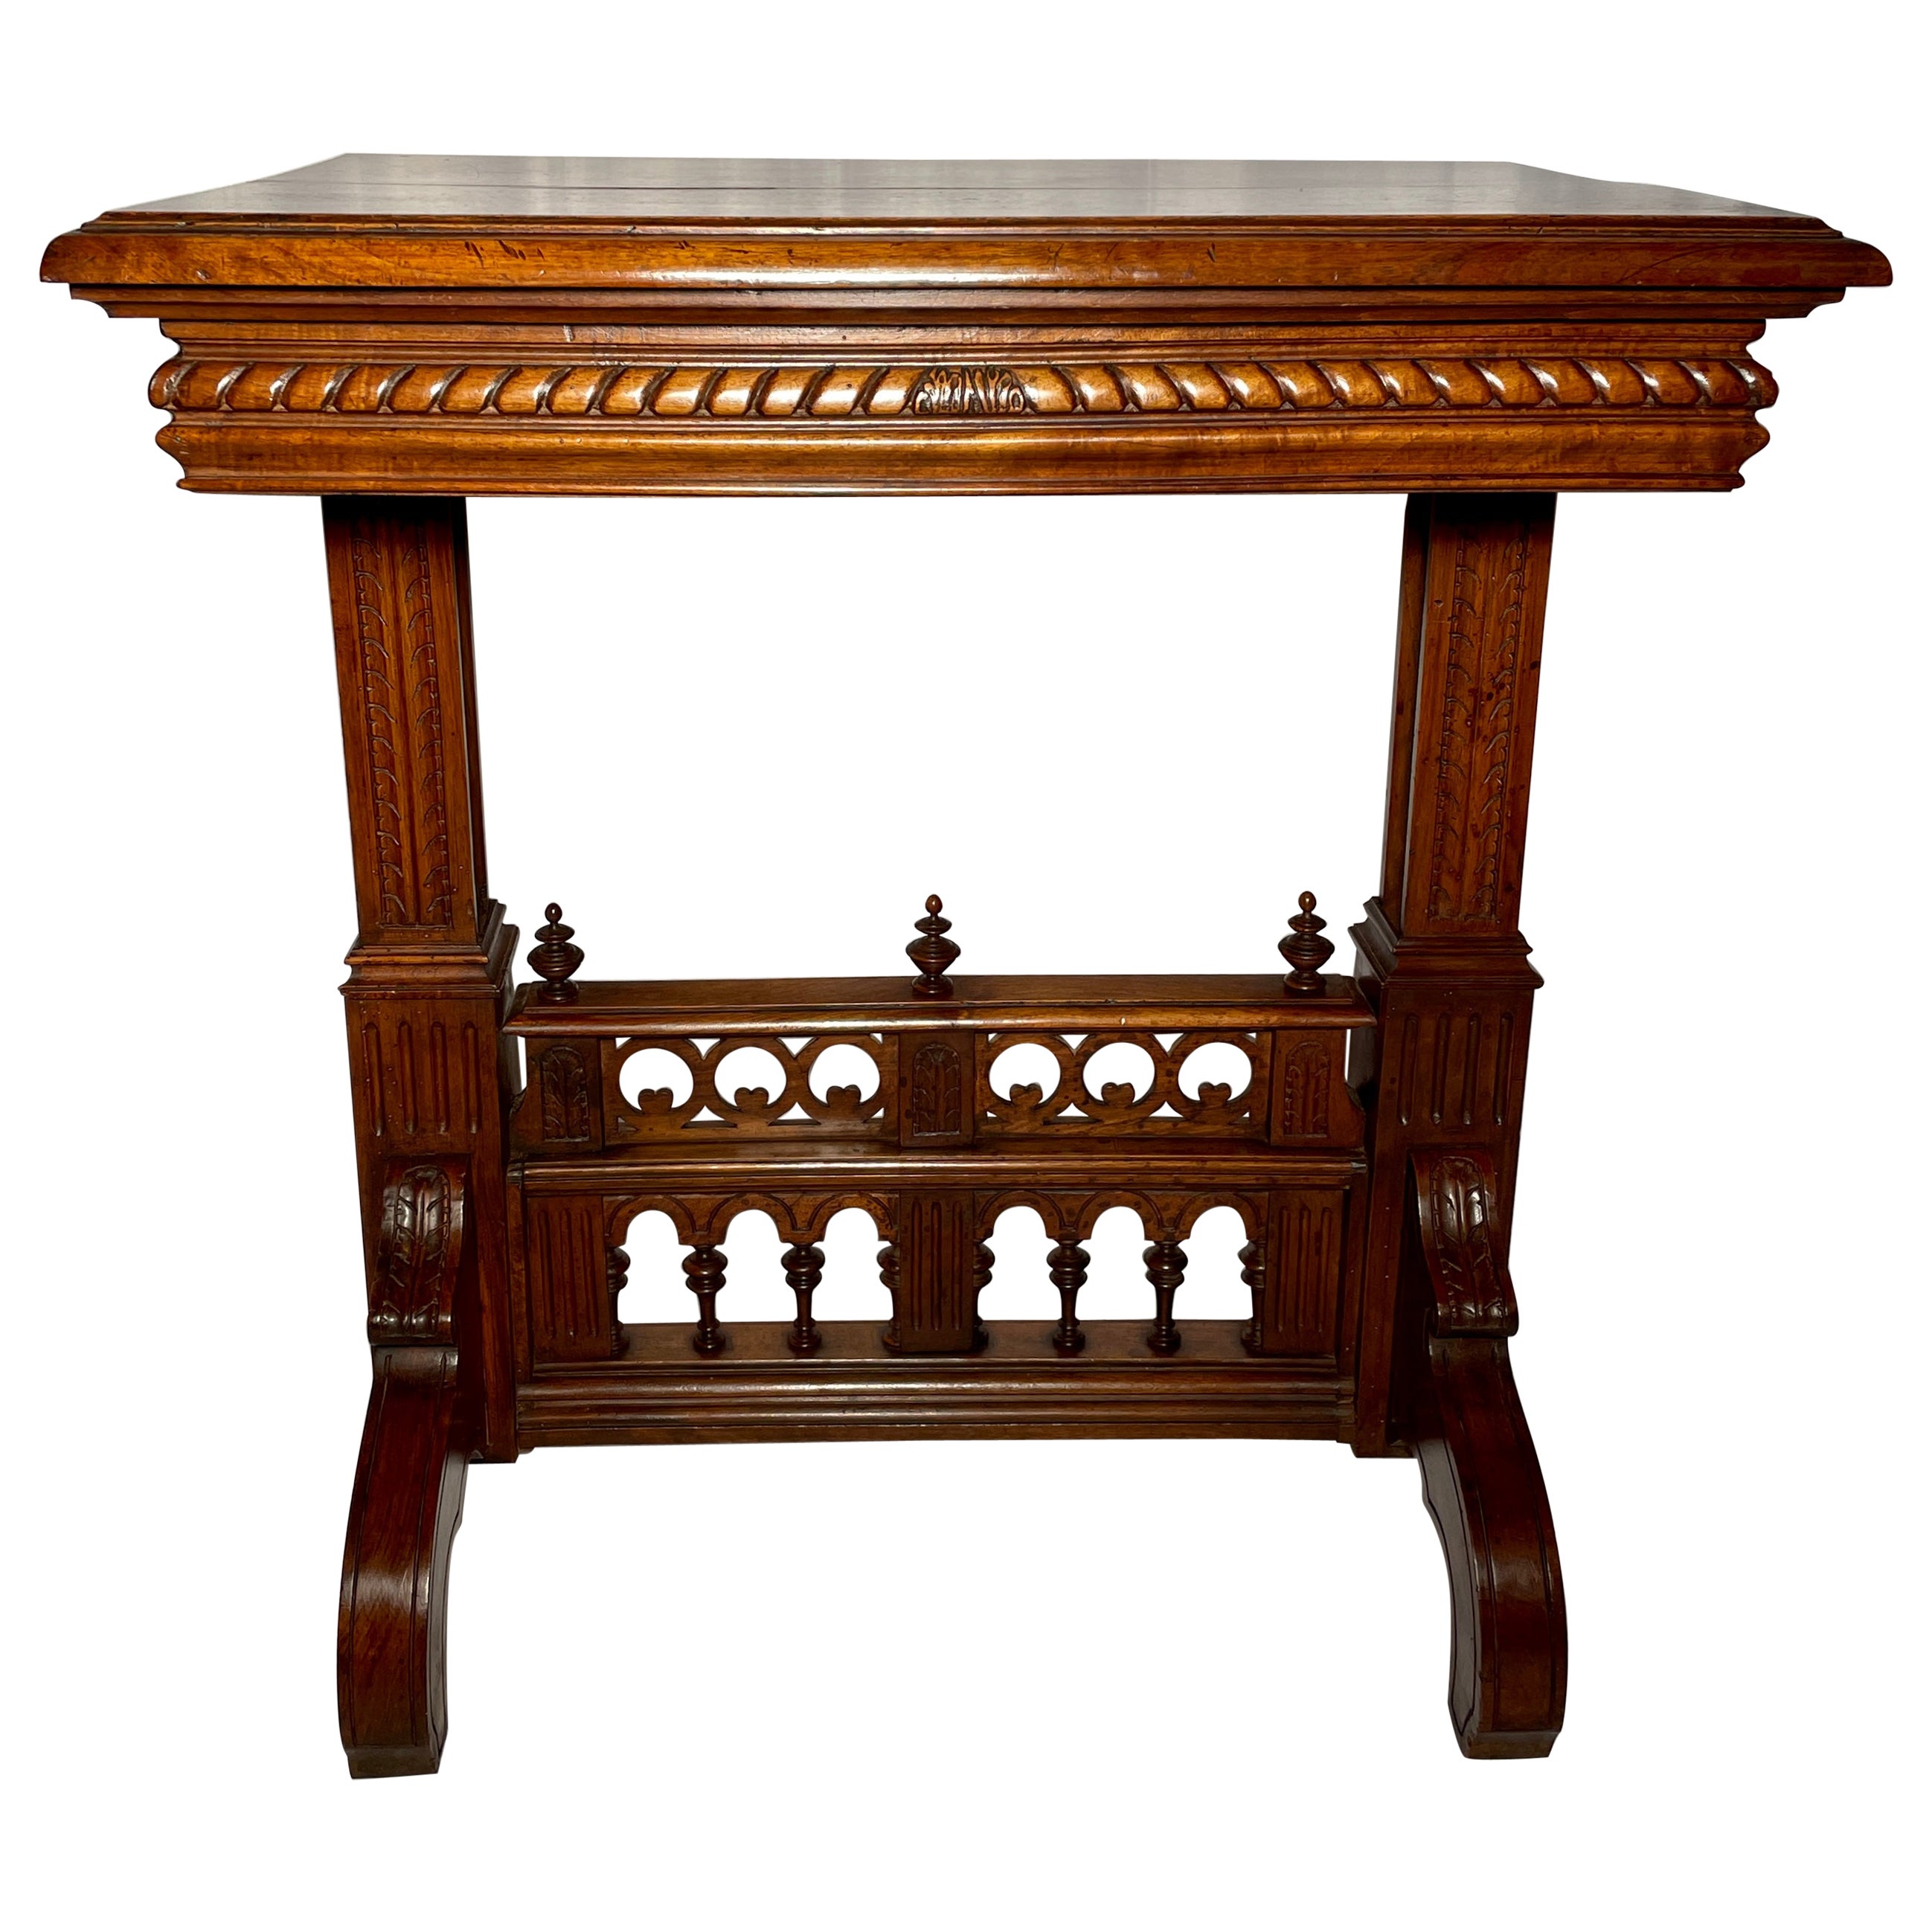 Antiker French Renaissance Revival Tisch aus Nussbaum, um 1890